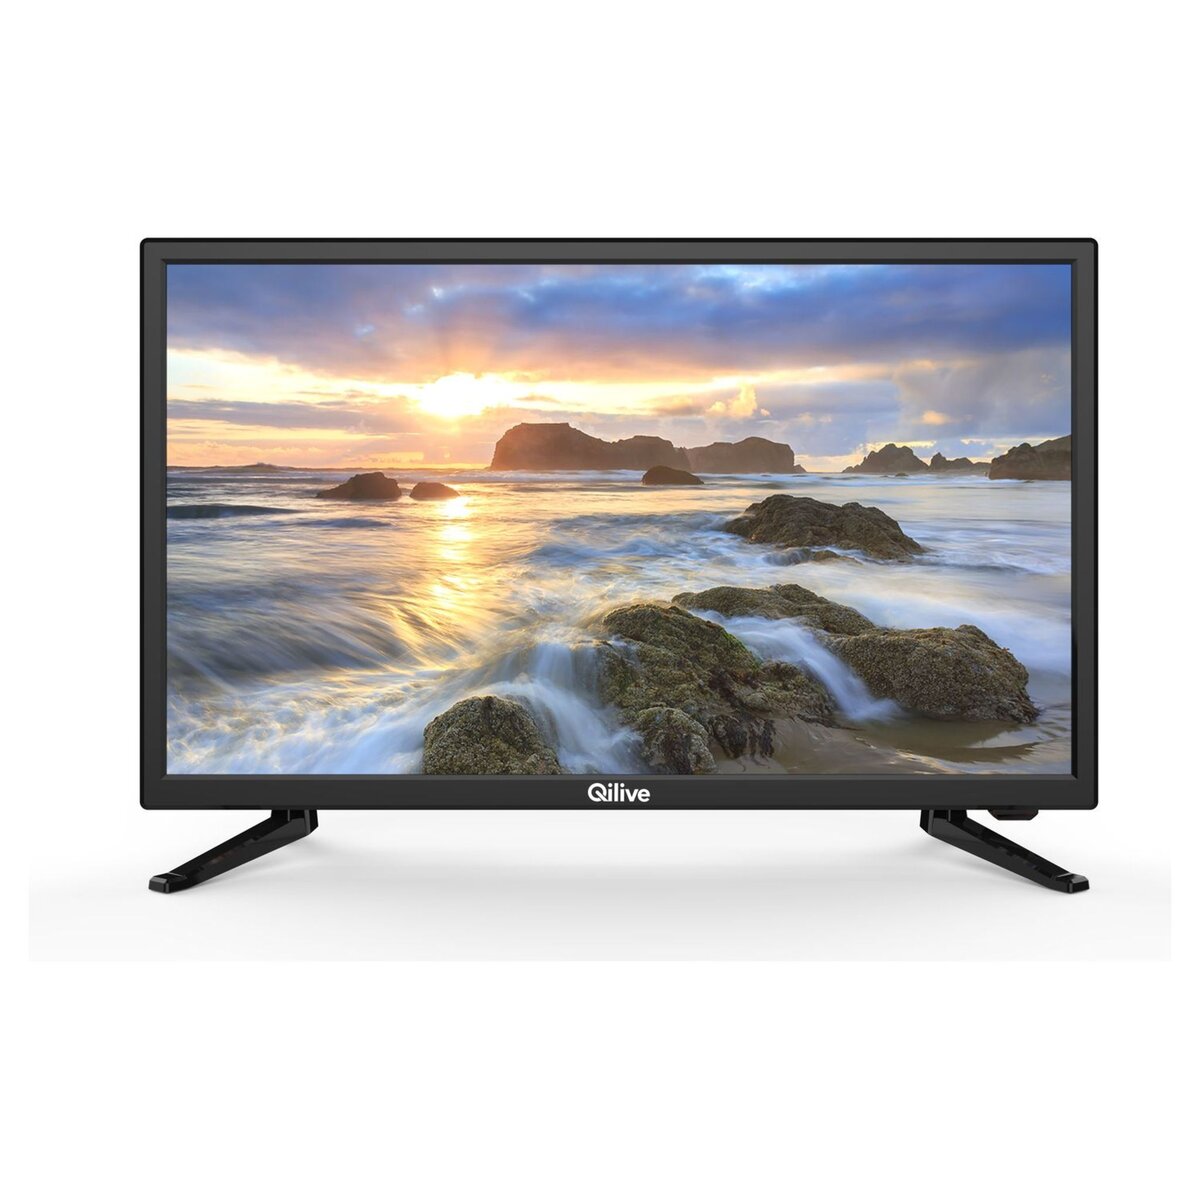 QILIVE Q24-984B - TV - LED - HD - 60 cm